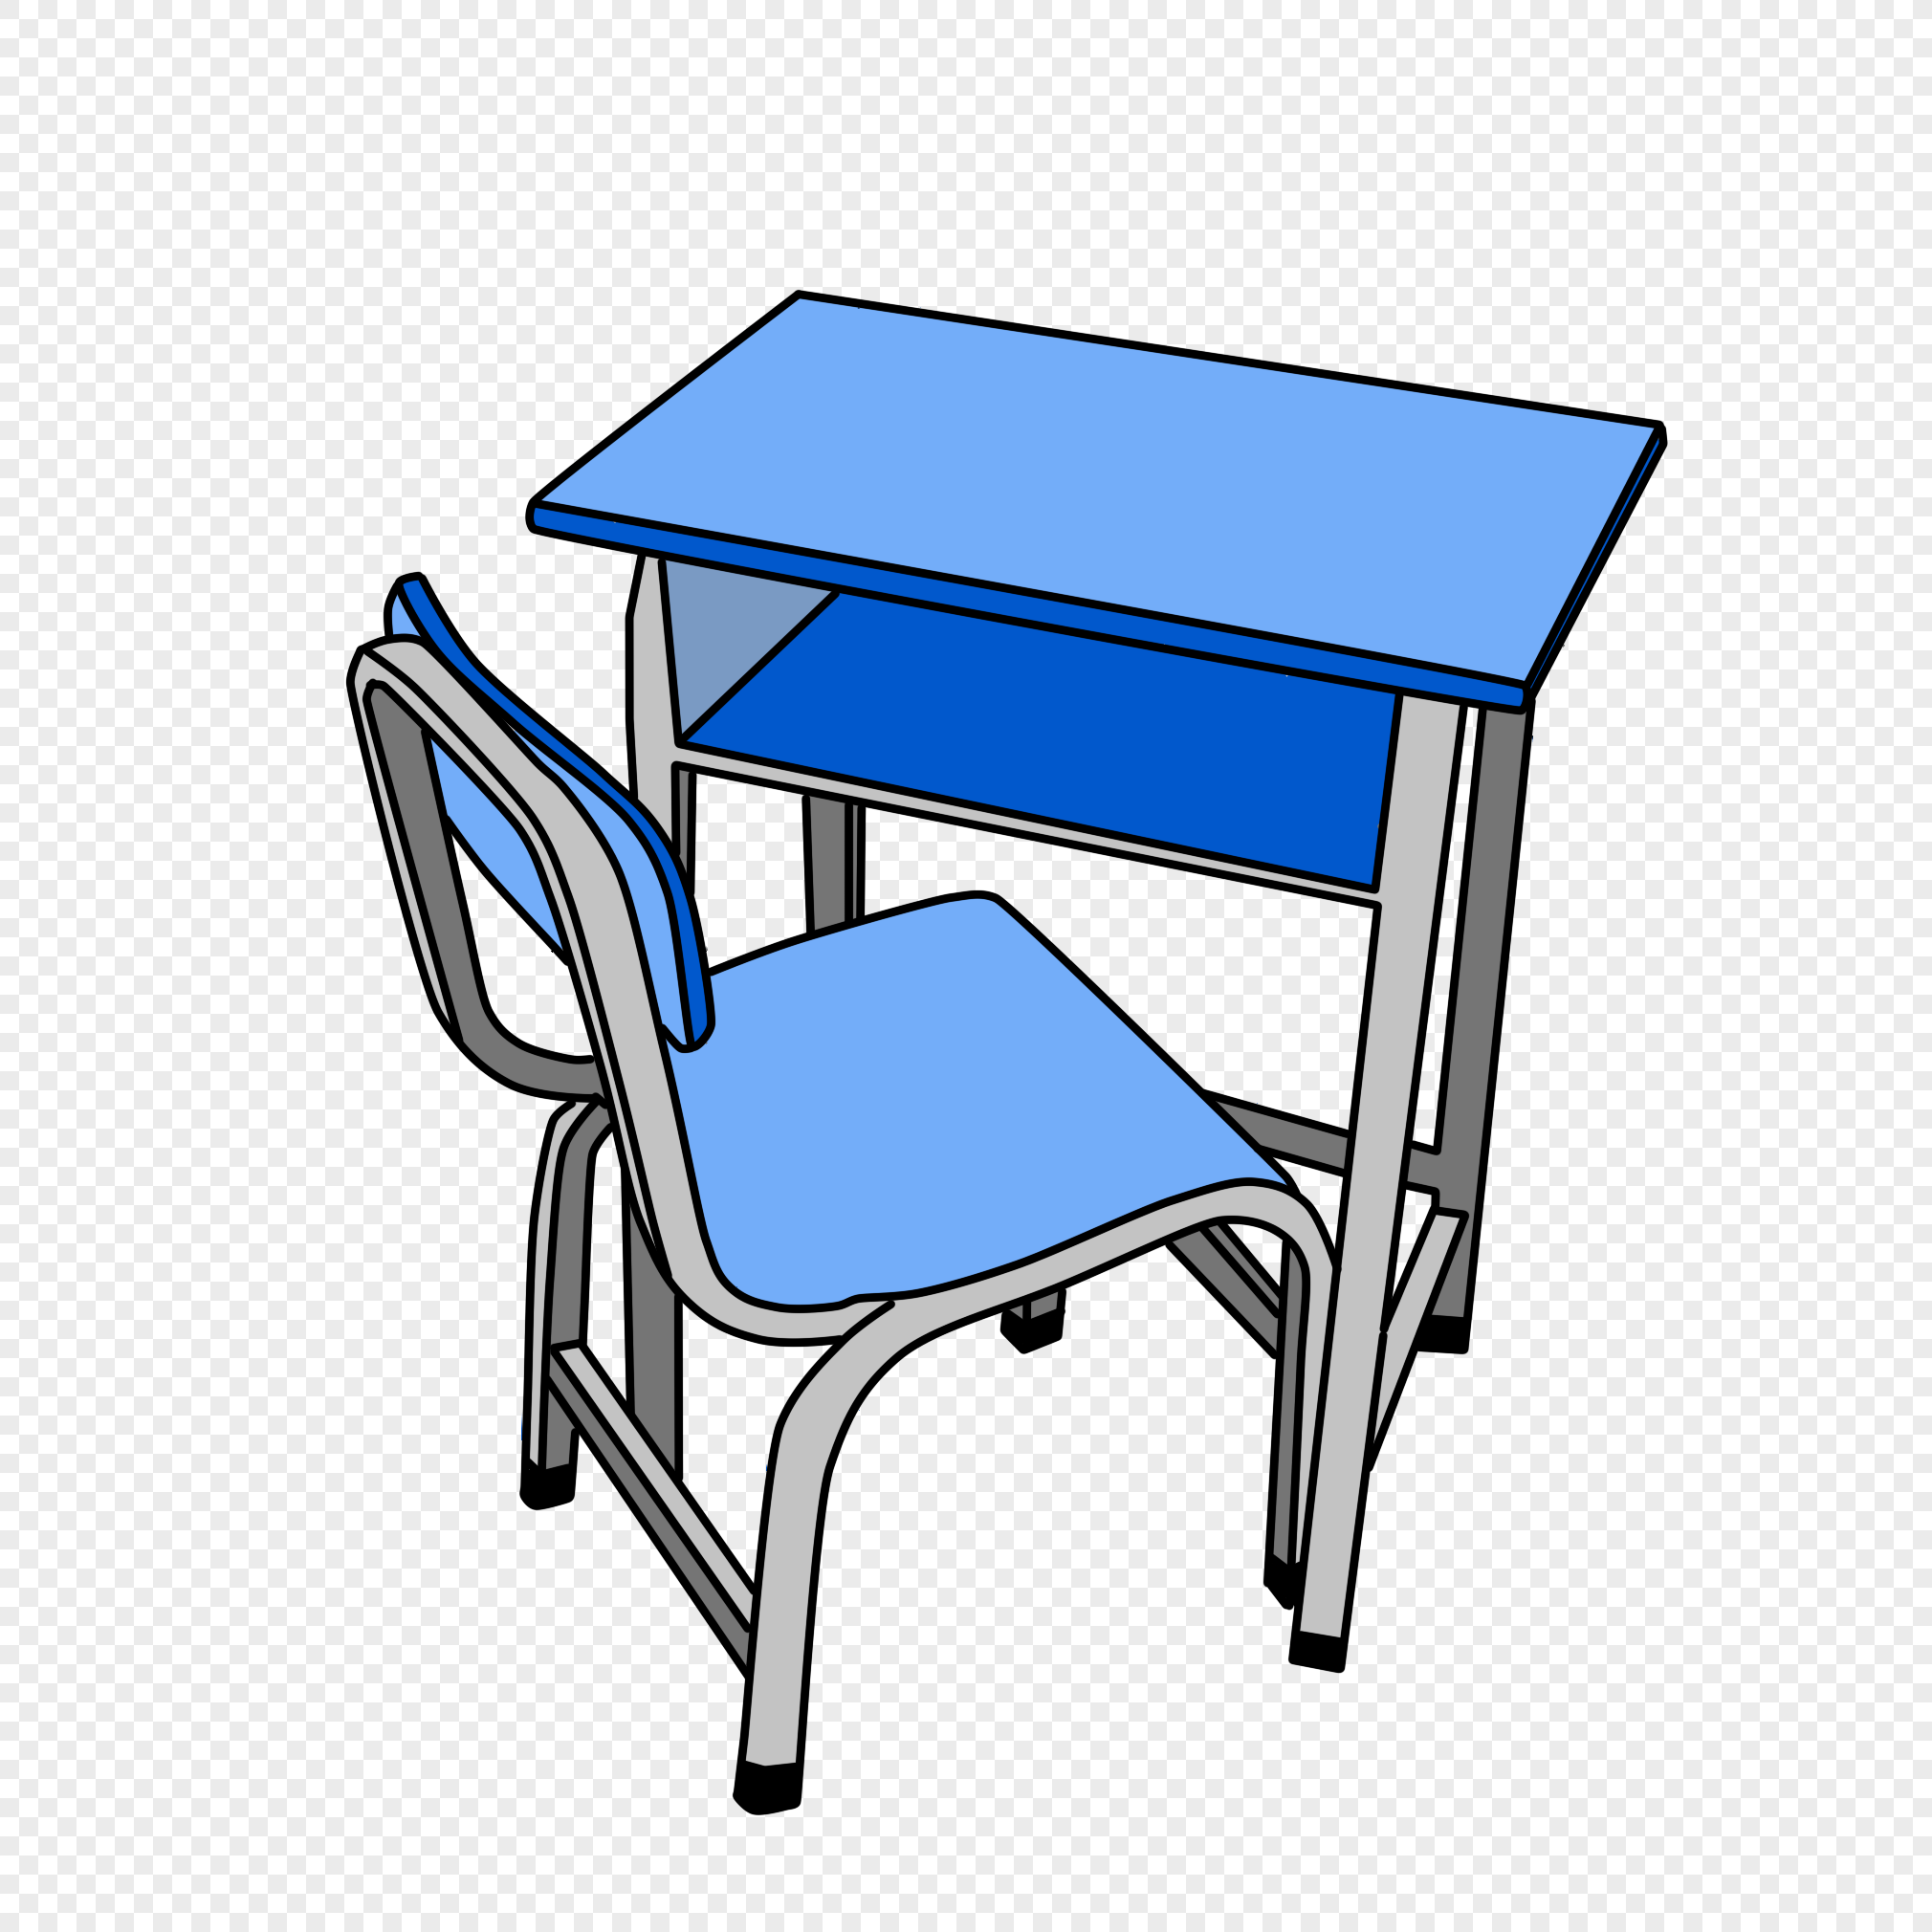 Школьный стол на прозрачном фоне